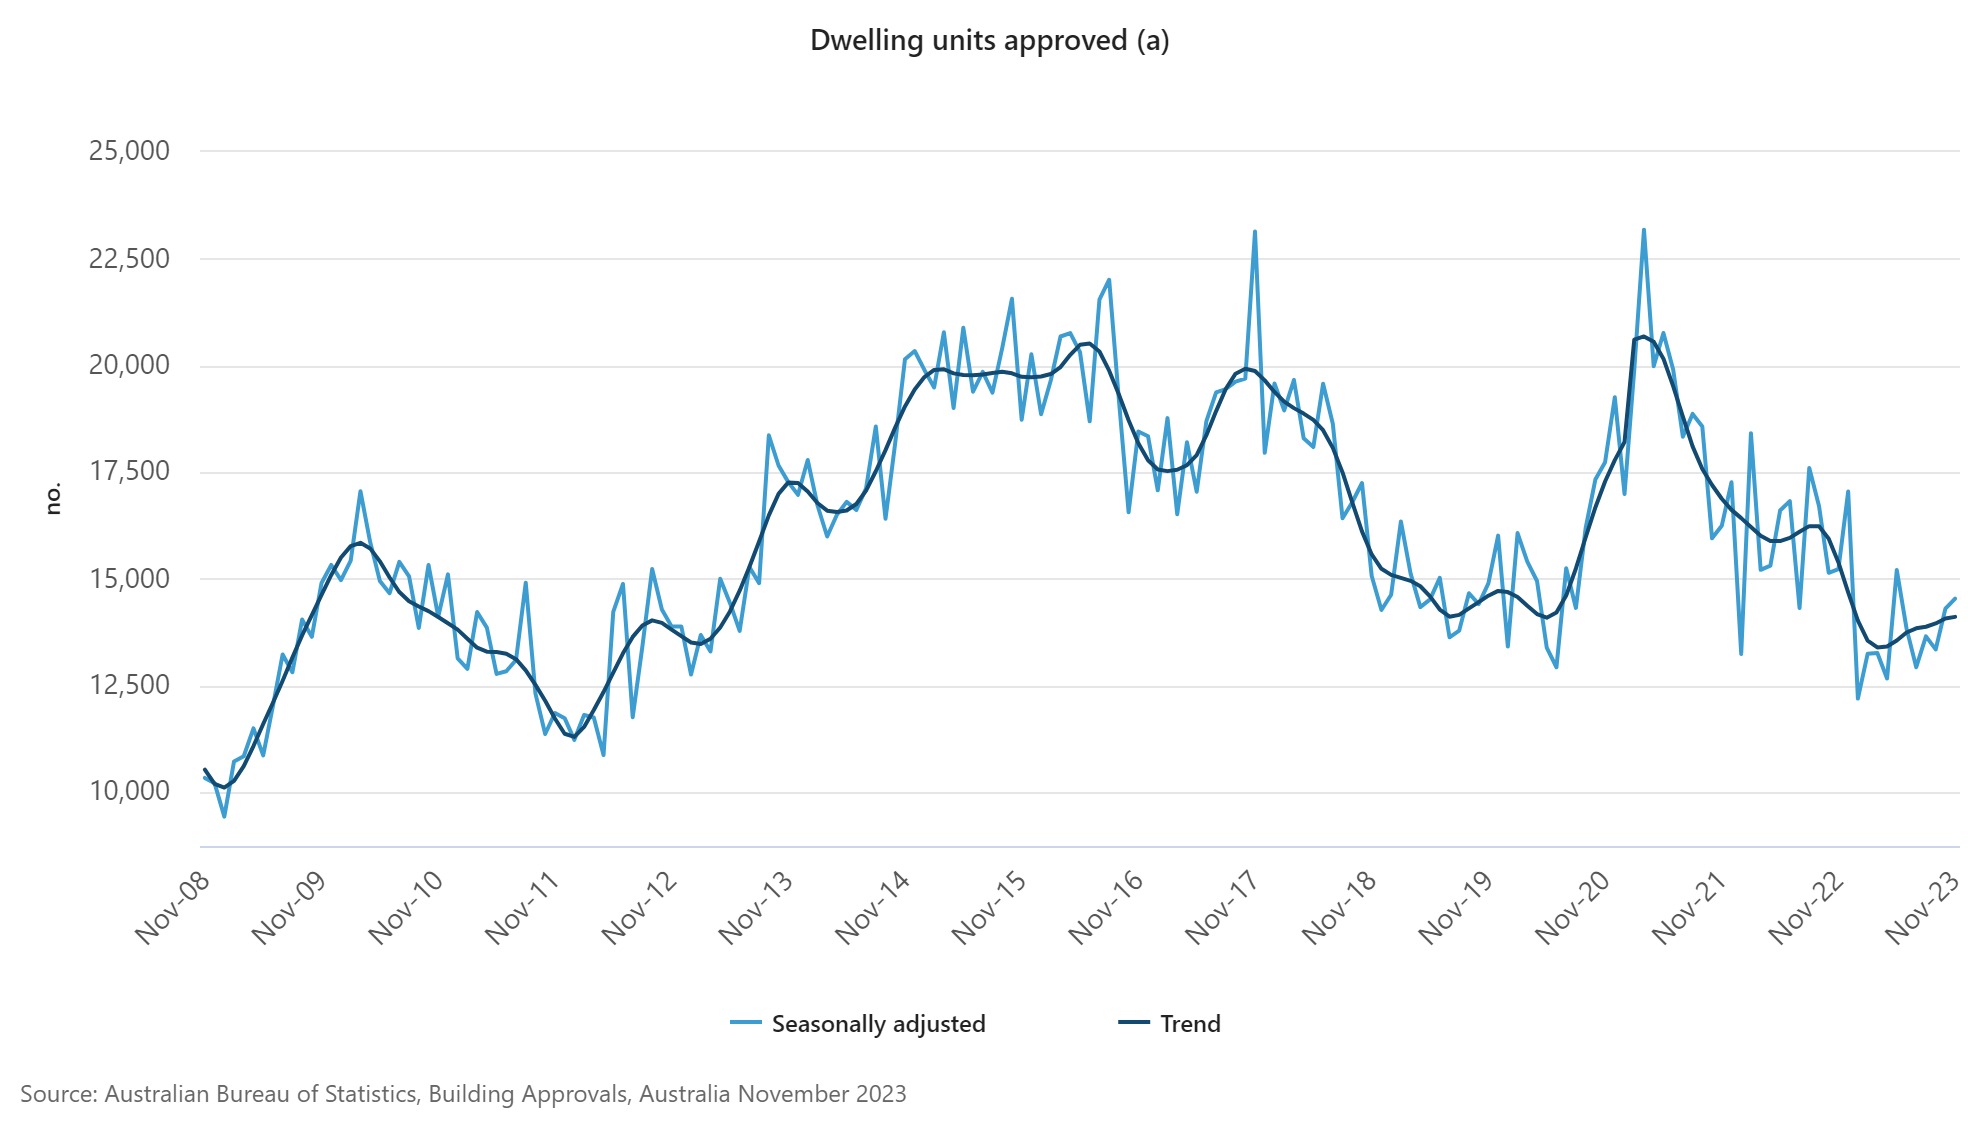 Australia's dwelling approvals rise in November | Australian Broker News